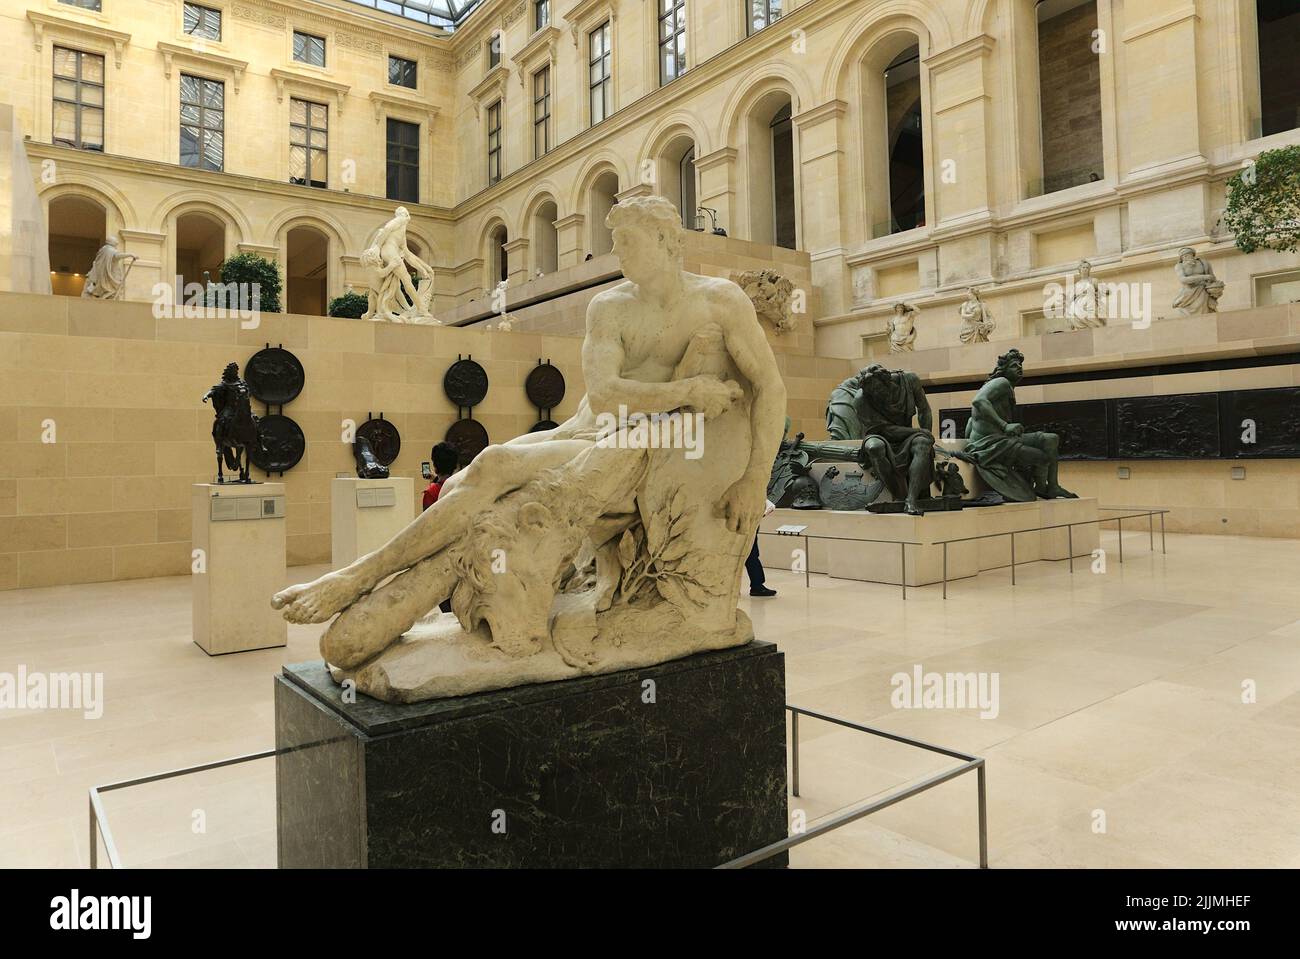 La scultura in marmo Gallic Hercules nel cortile Cour Marly nell'ala Richelieu del Museo del Louvre a Parigi, Francia Foto Stock